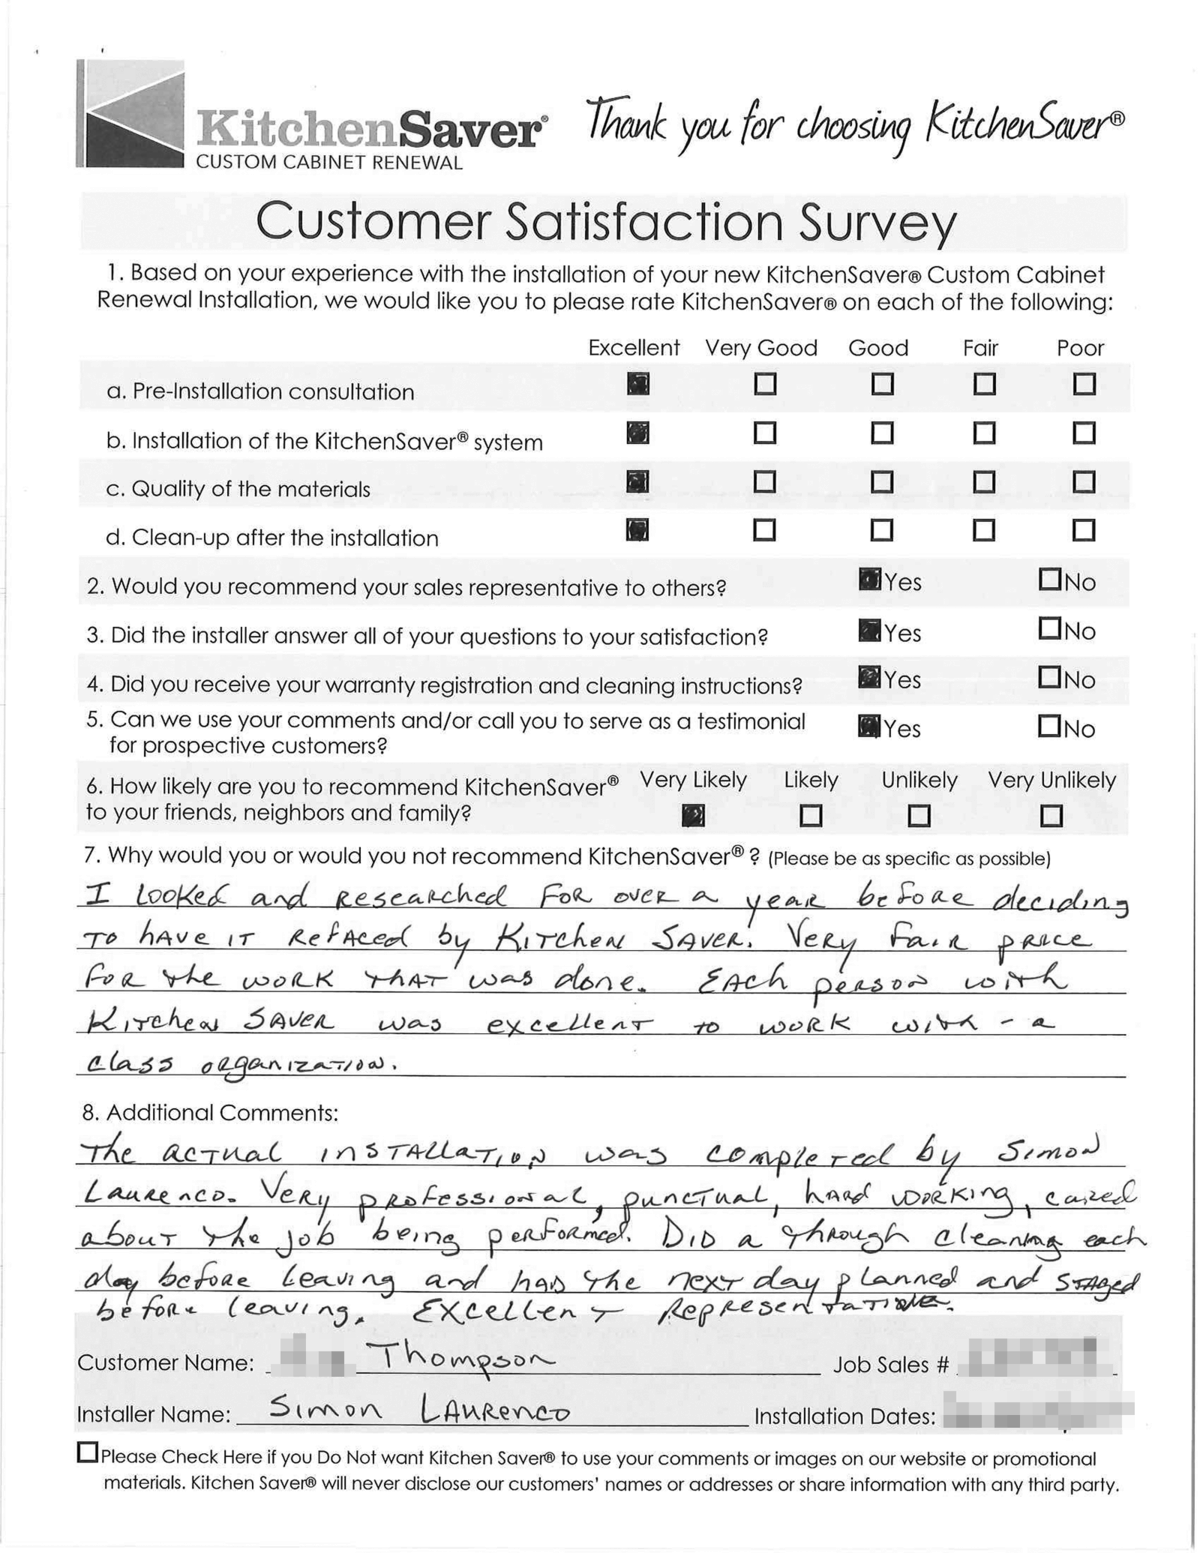  Thompson  Satisfaction Survey